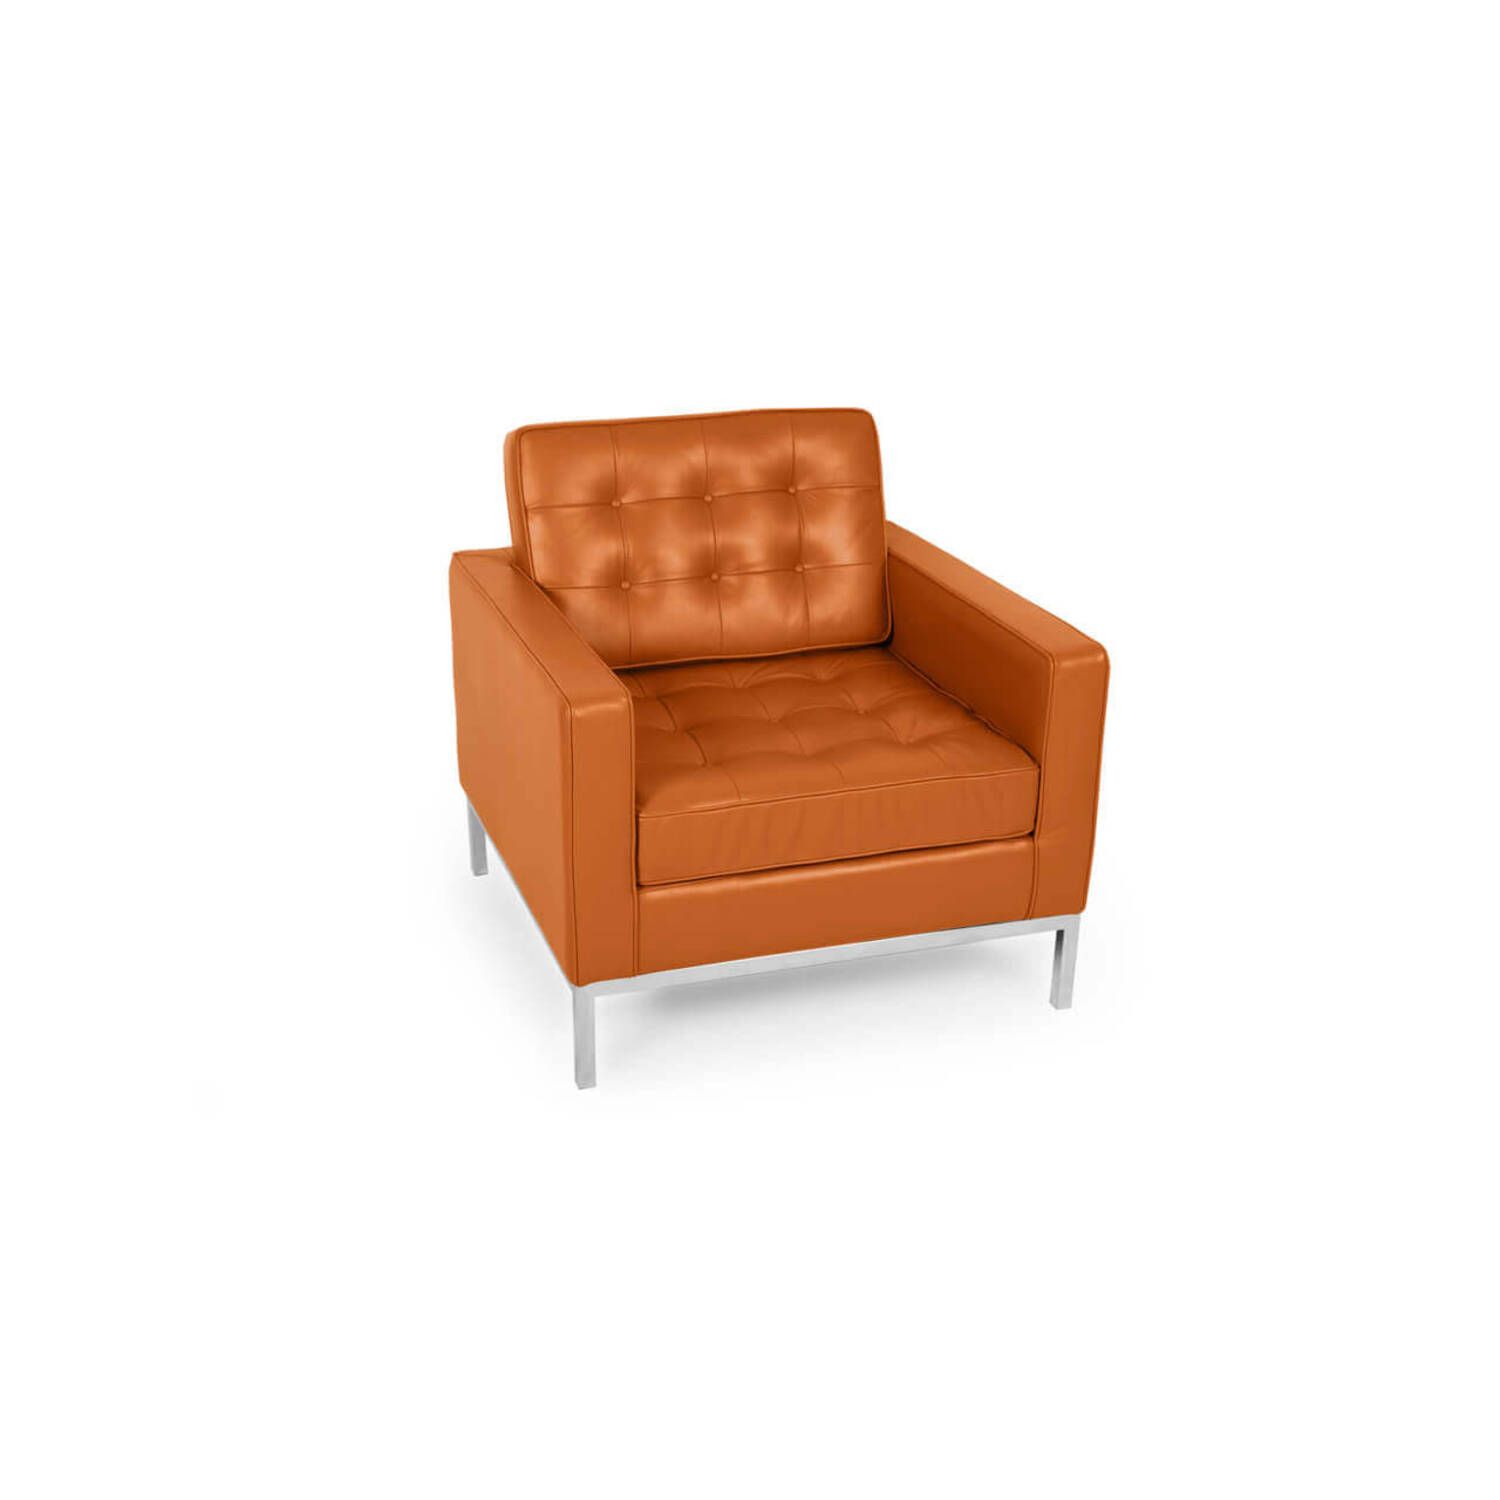 Кресло Florence, оранжевое, кожаное